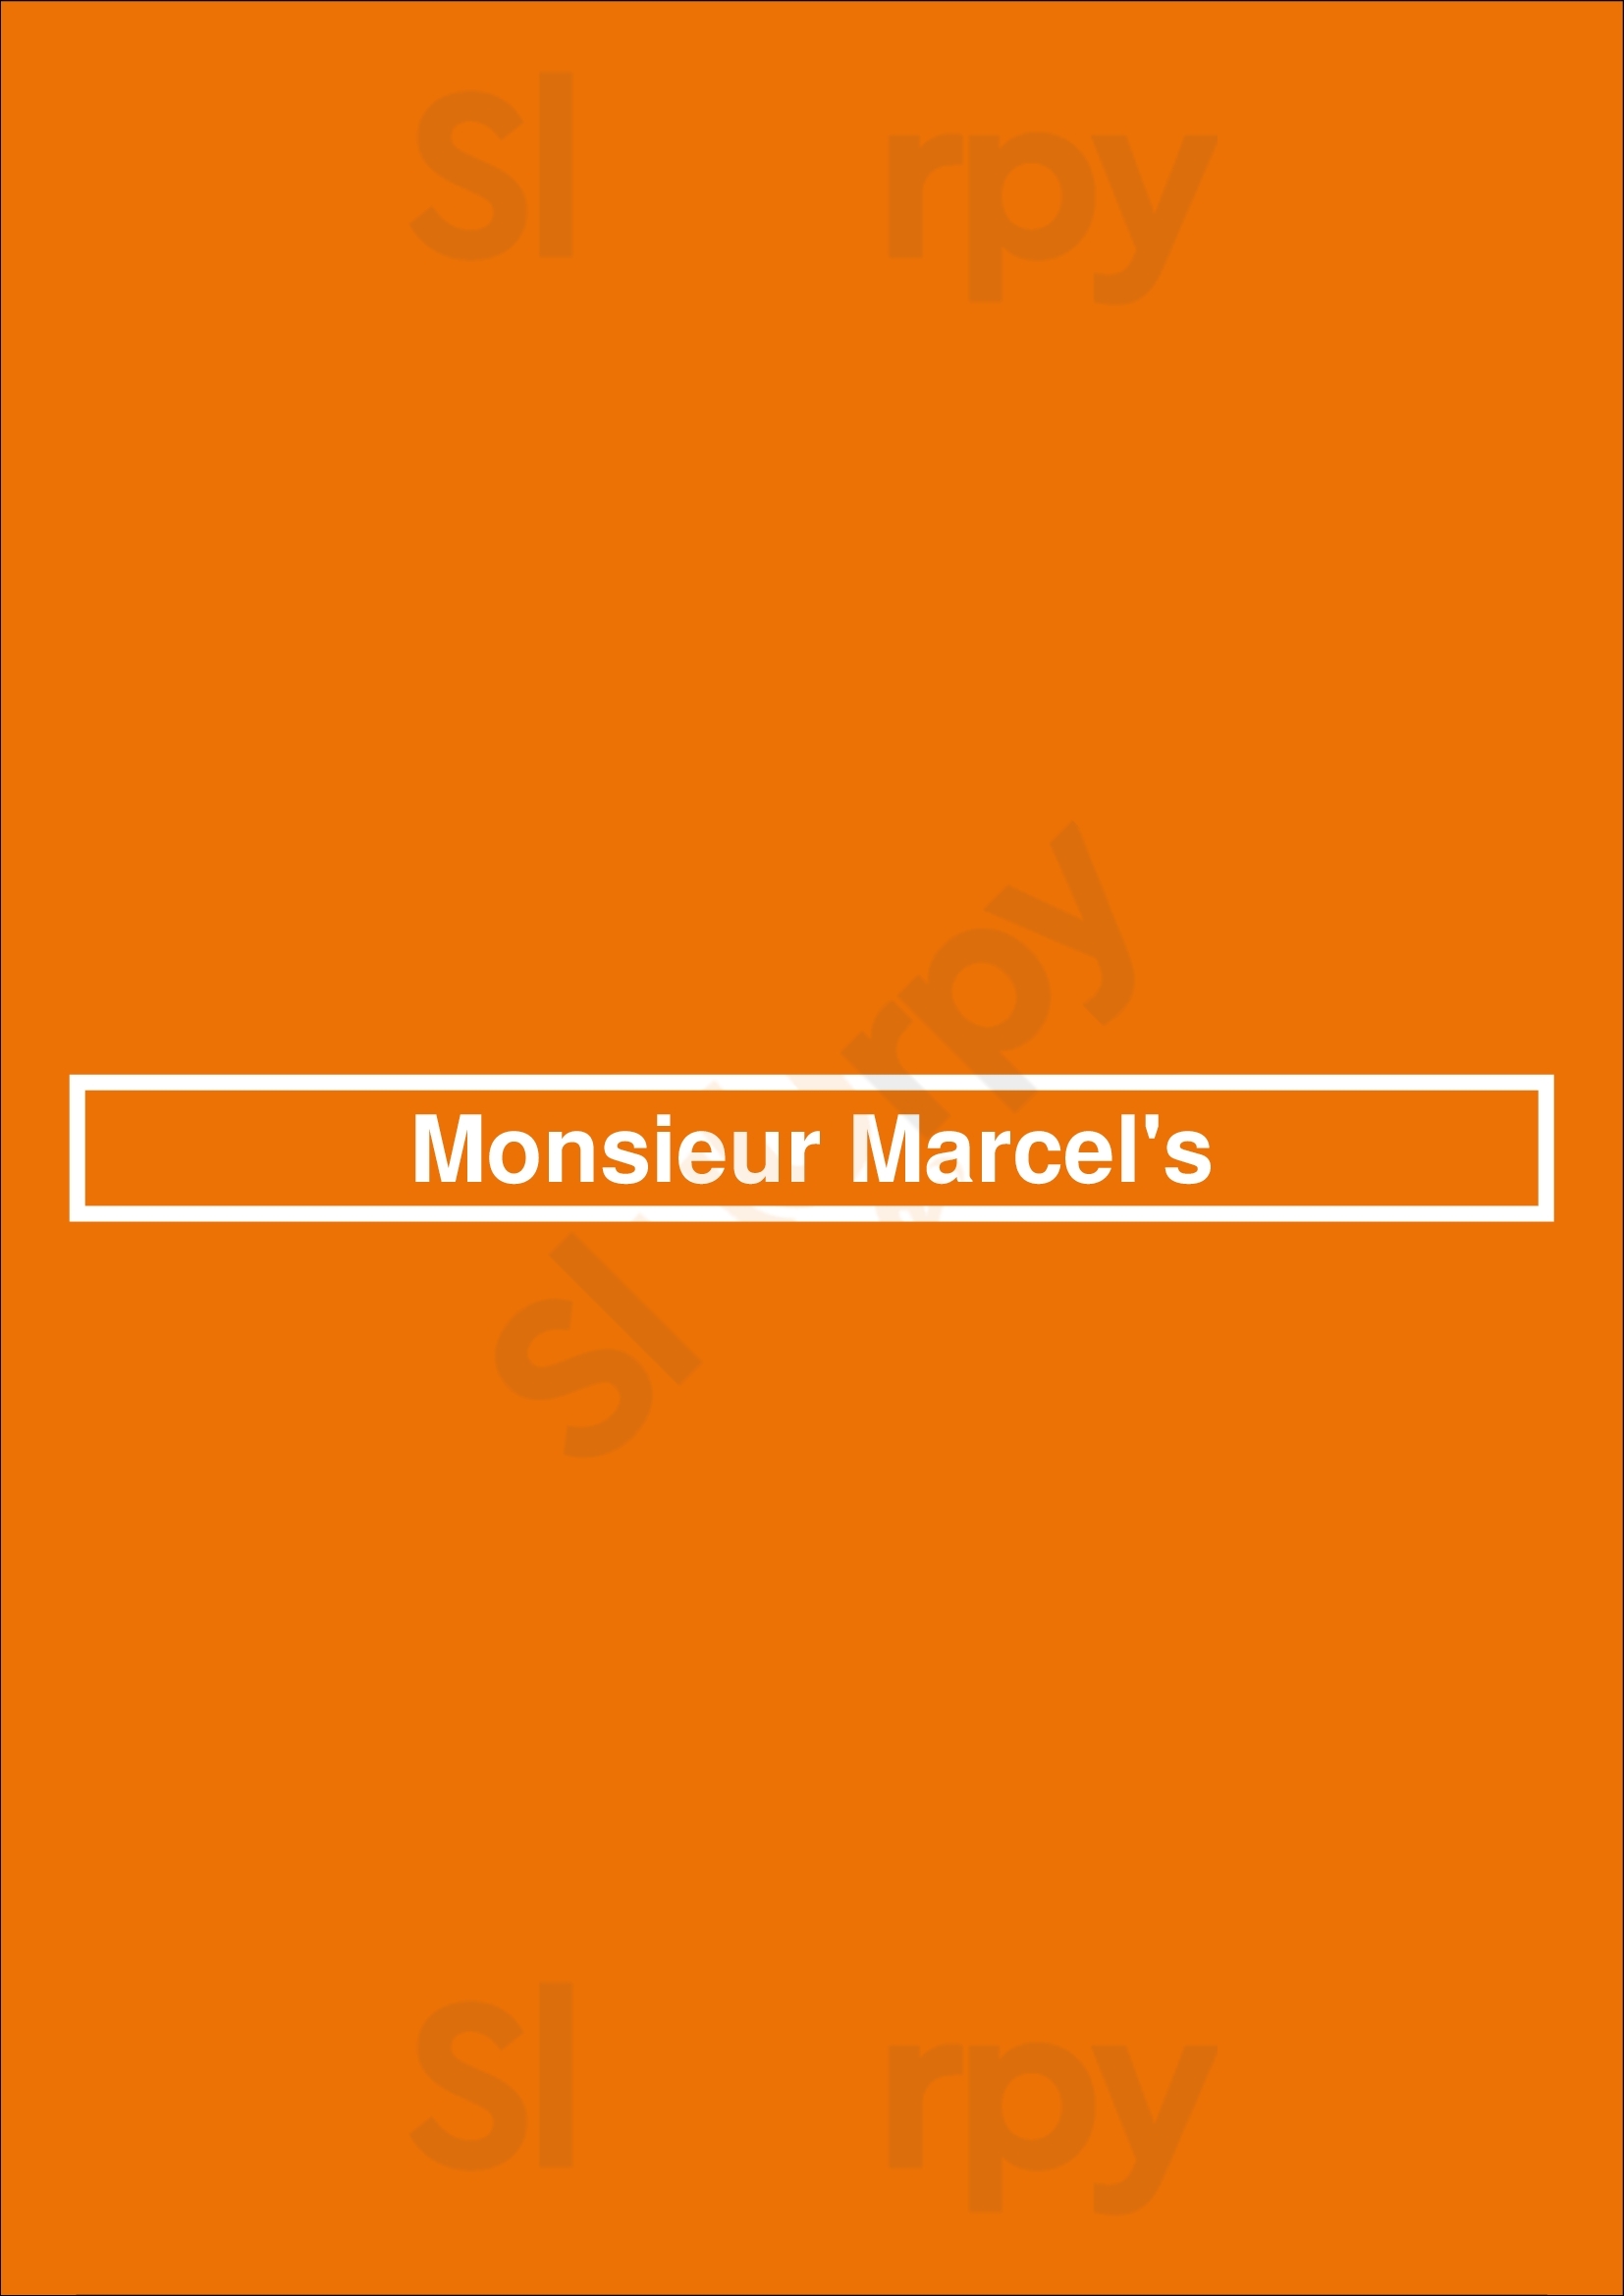 Monsieur Marcel's Gourmet Market And Restaurant Los Angeles Menu - 1